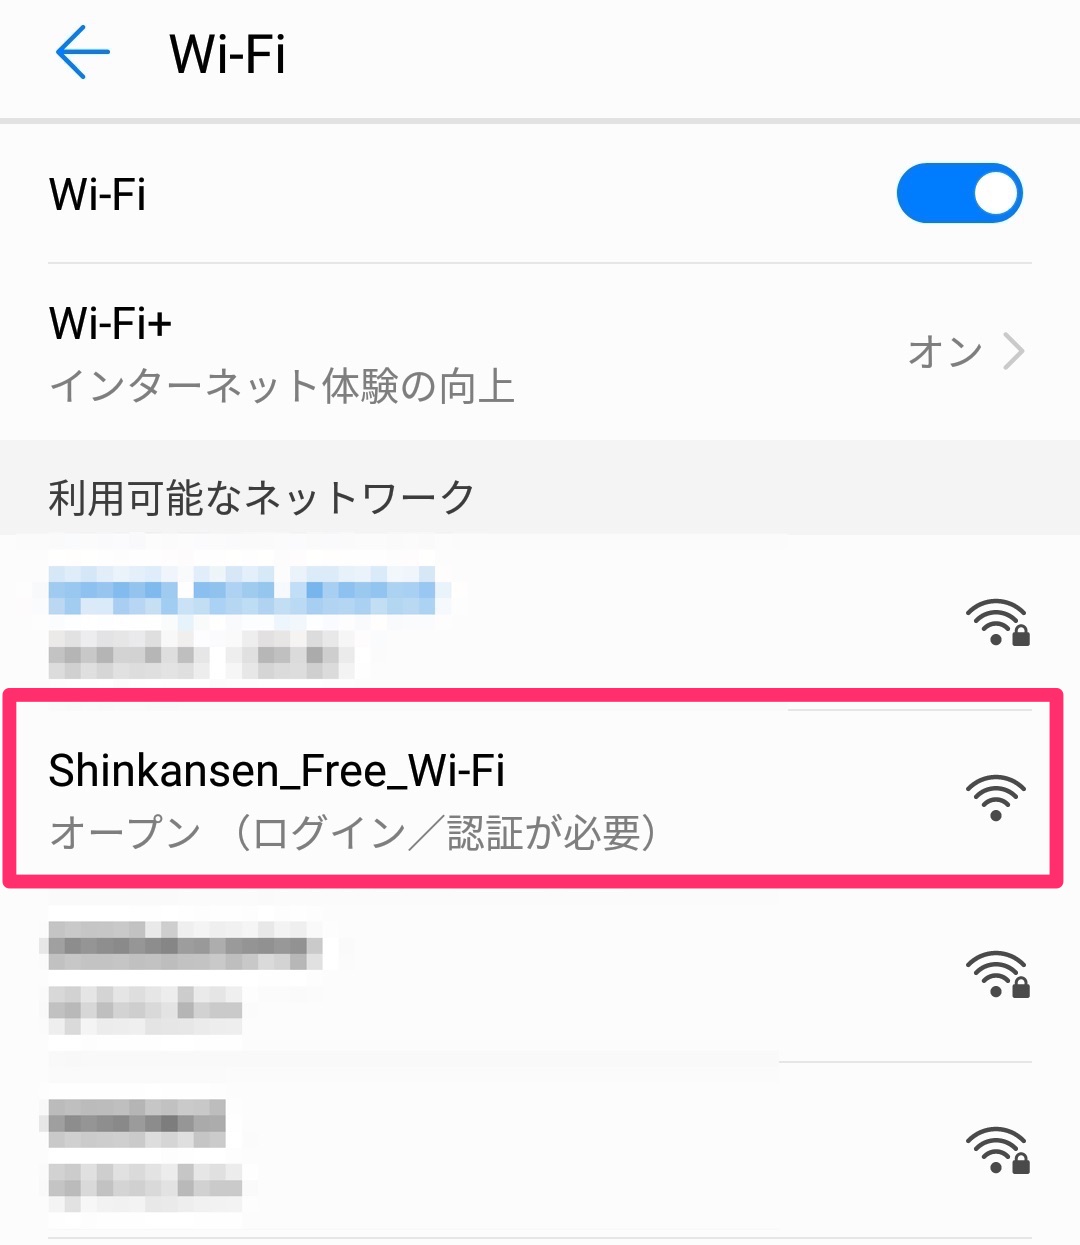 「Shinkansen_Free_Wi-Fi」を選ぶ